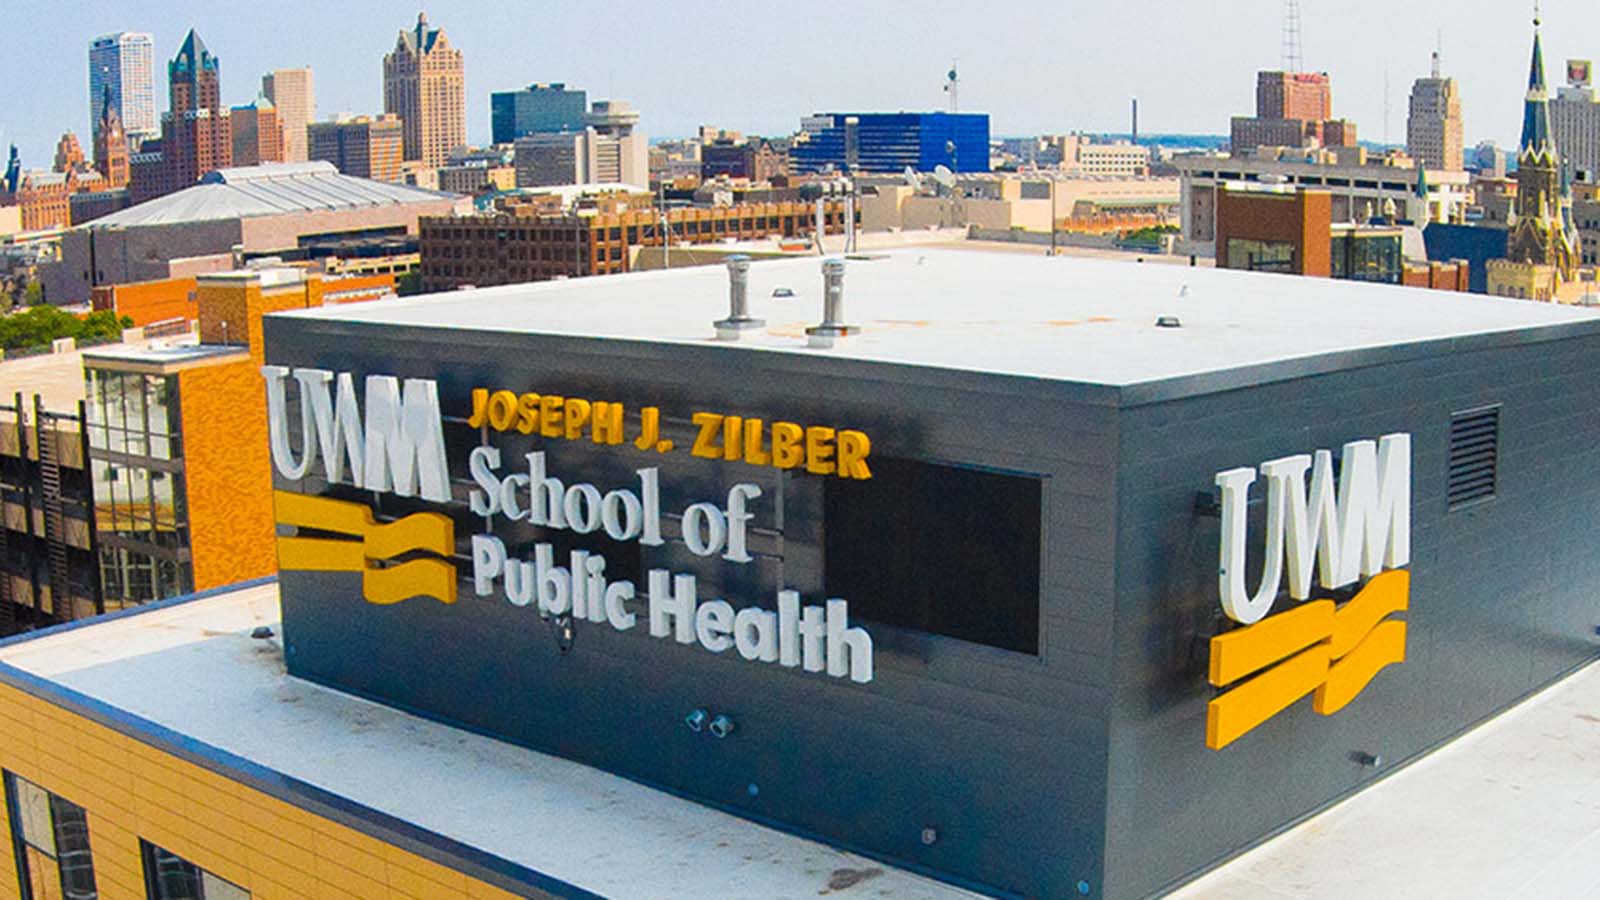 UWM Joseph J. Zilber School of Public Health building exterior